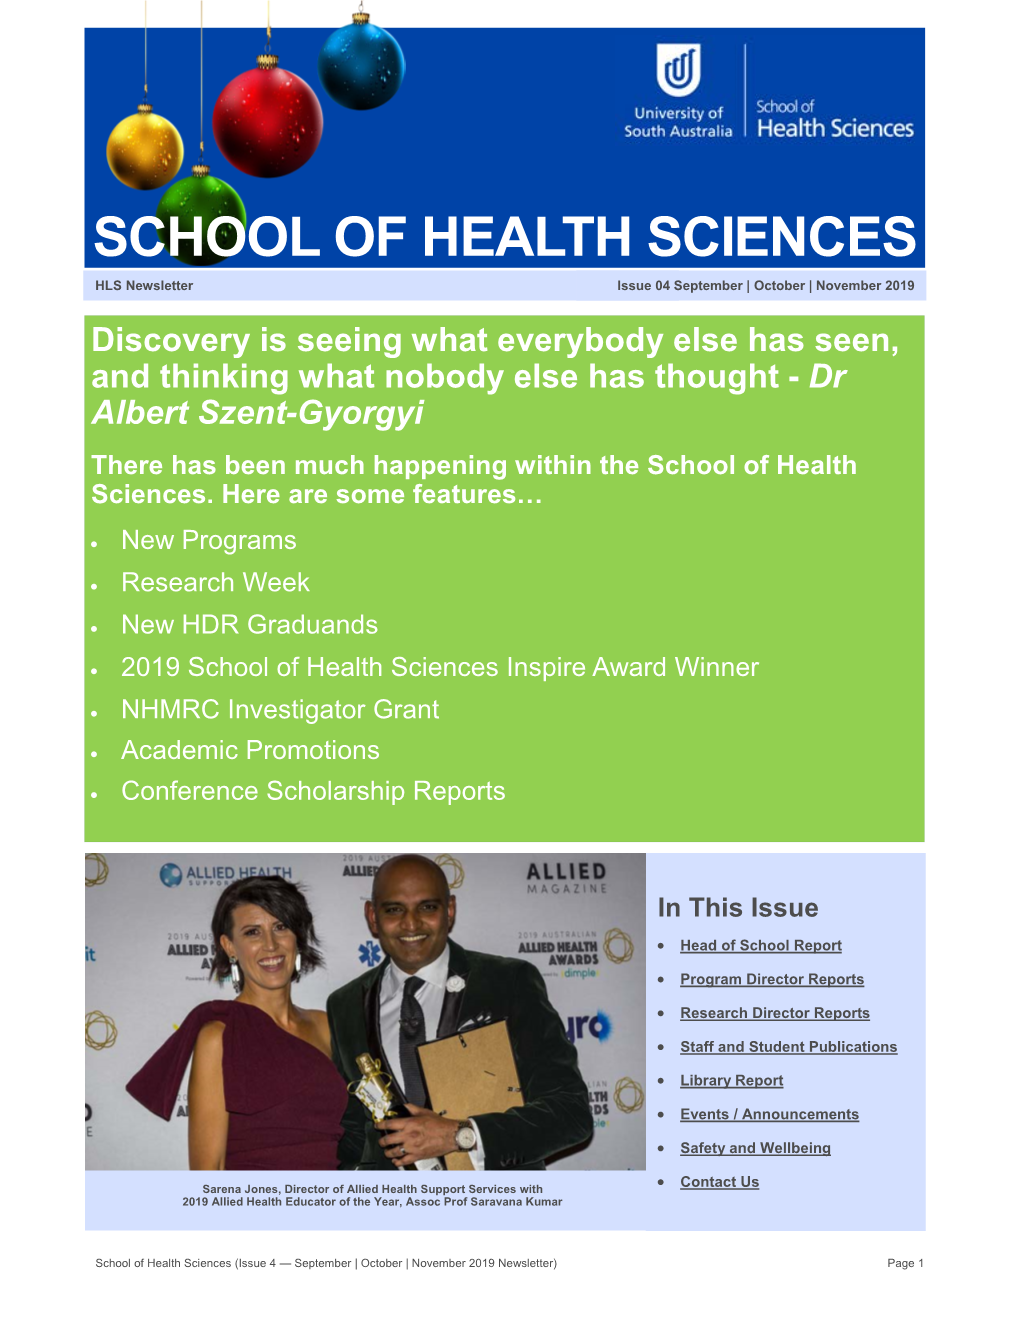 School of Health Sciences